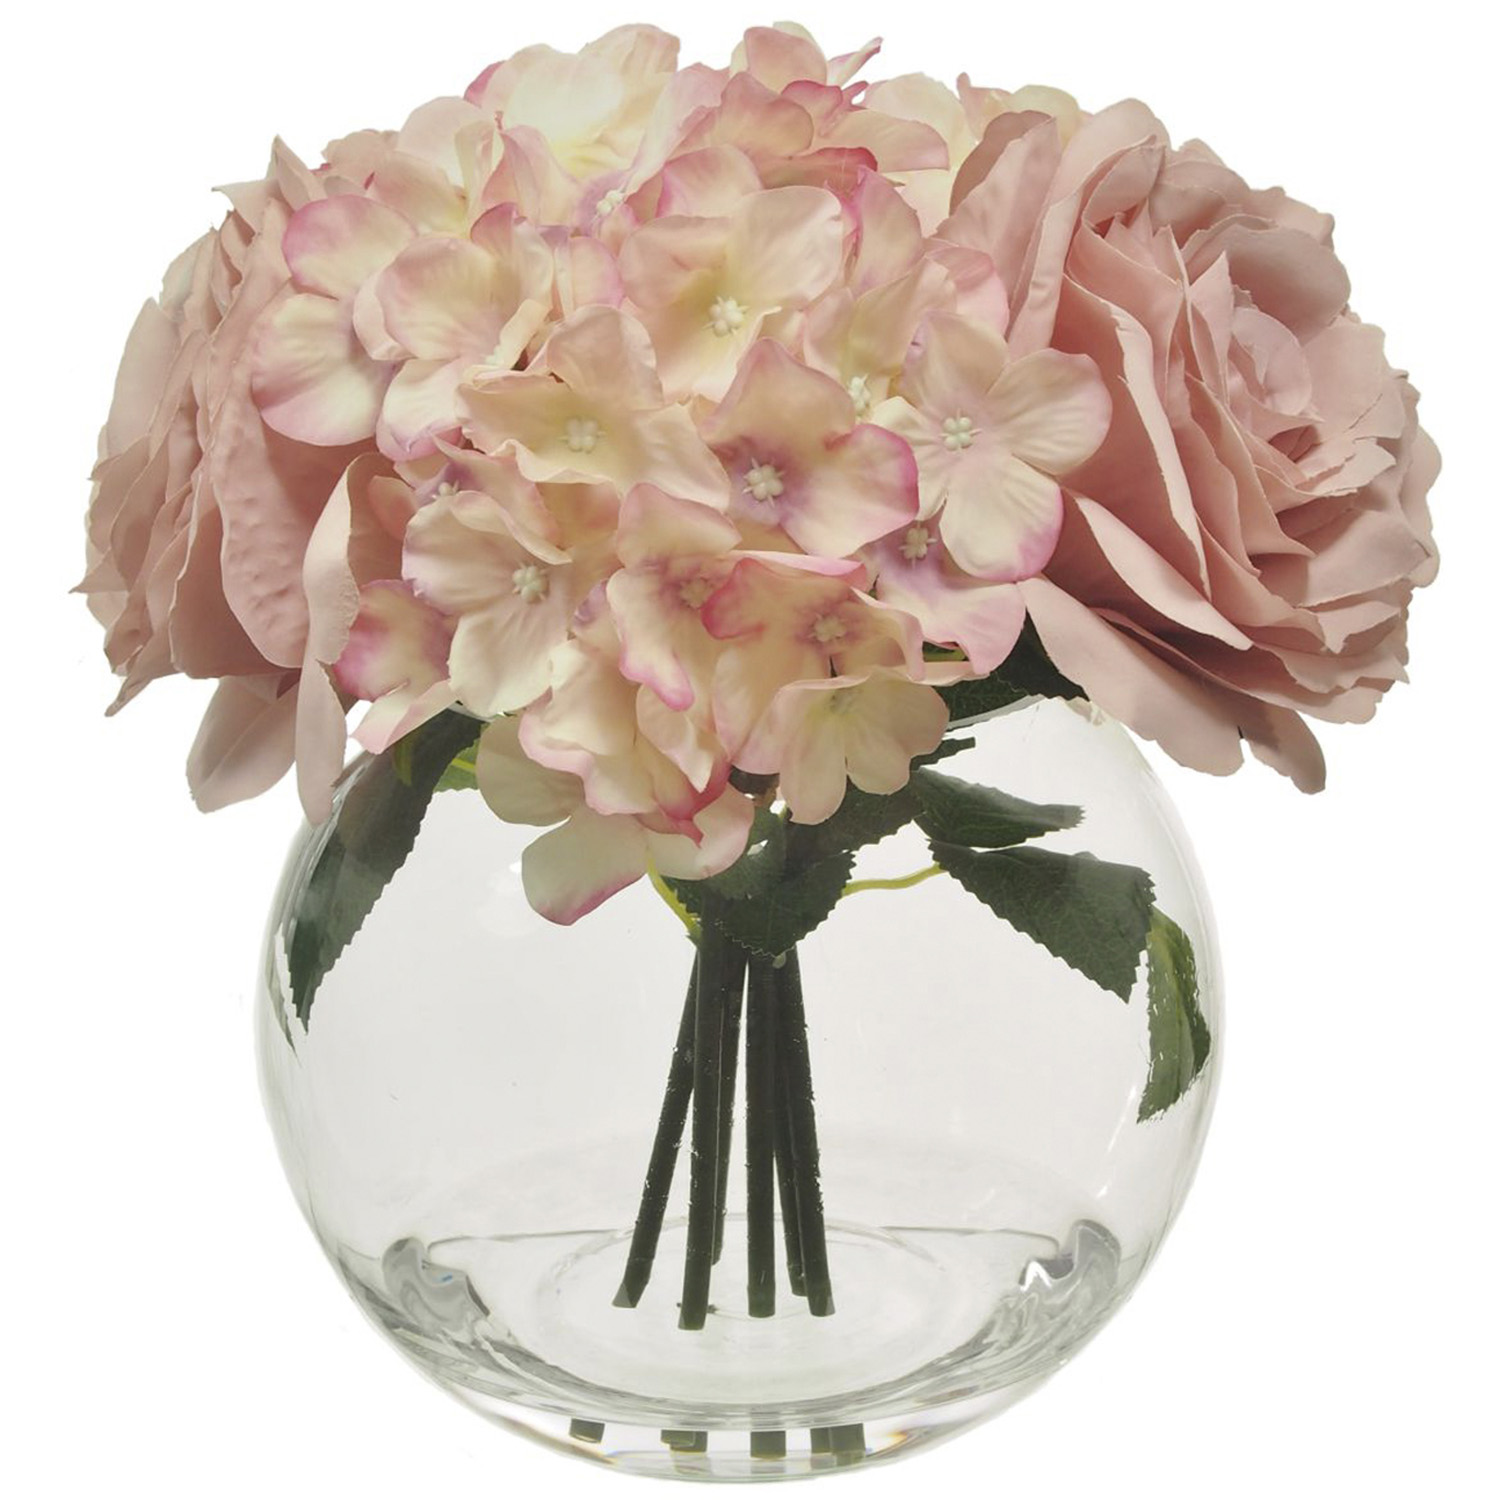 Blush Pink Complete Rose Hydrangea Arrangement Artificial Plant Image